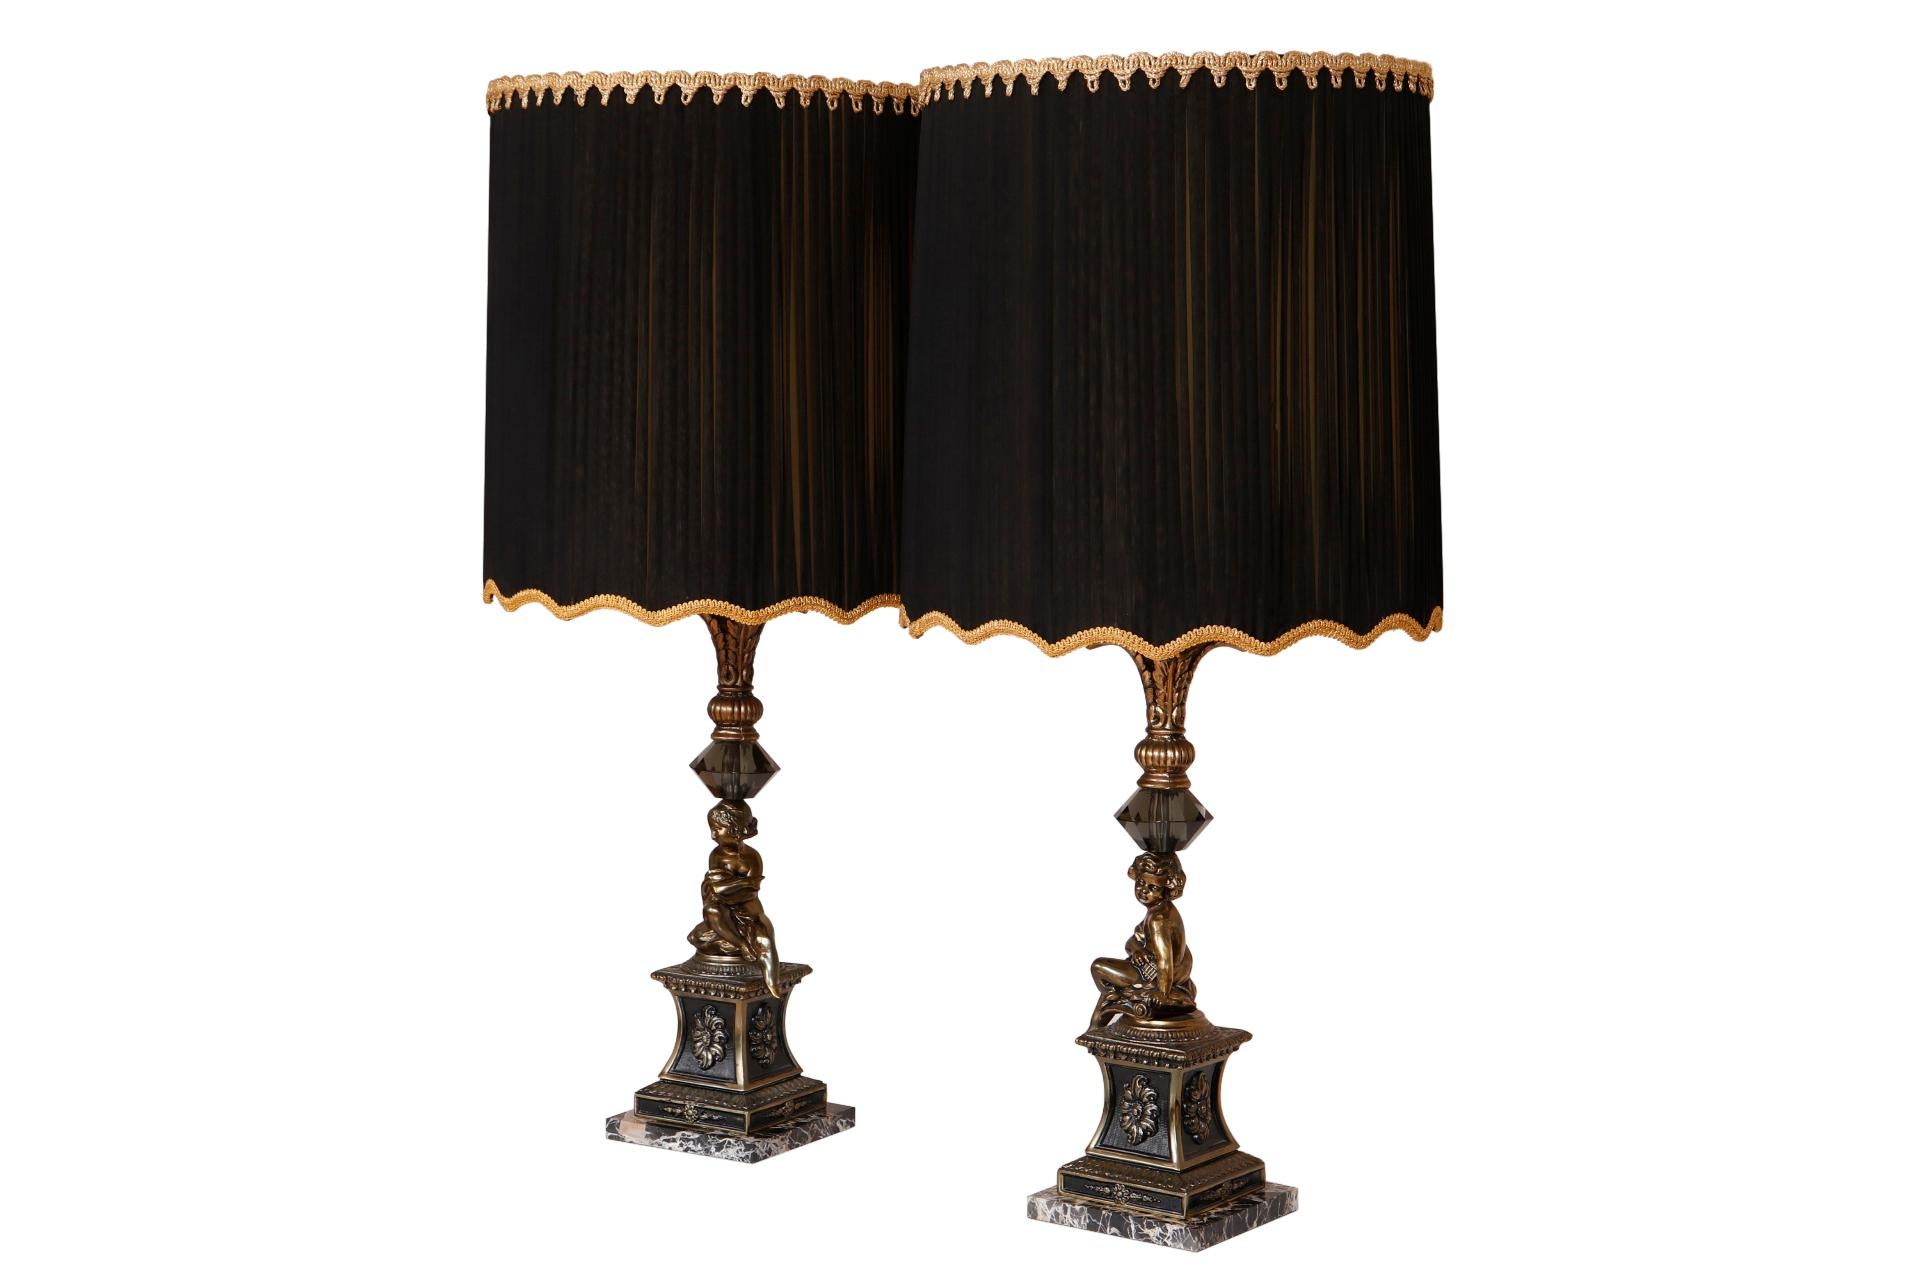 Une paire de lampes de table figuratives de style Empire français. Les lunettes noires rouillées sont garnies d'une torsion en corde et d'une ganse dorée. Les colonnes sont surmontées de plumes d'acanthe en laiton moulé et de grands cristaux en